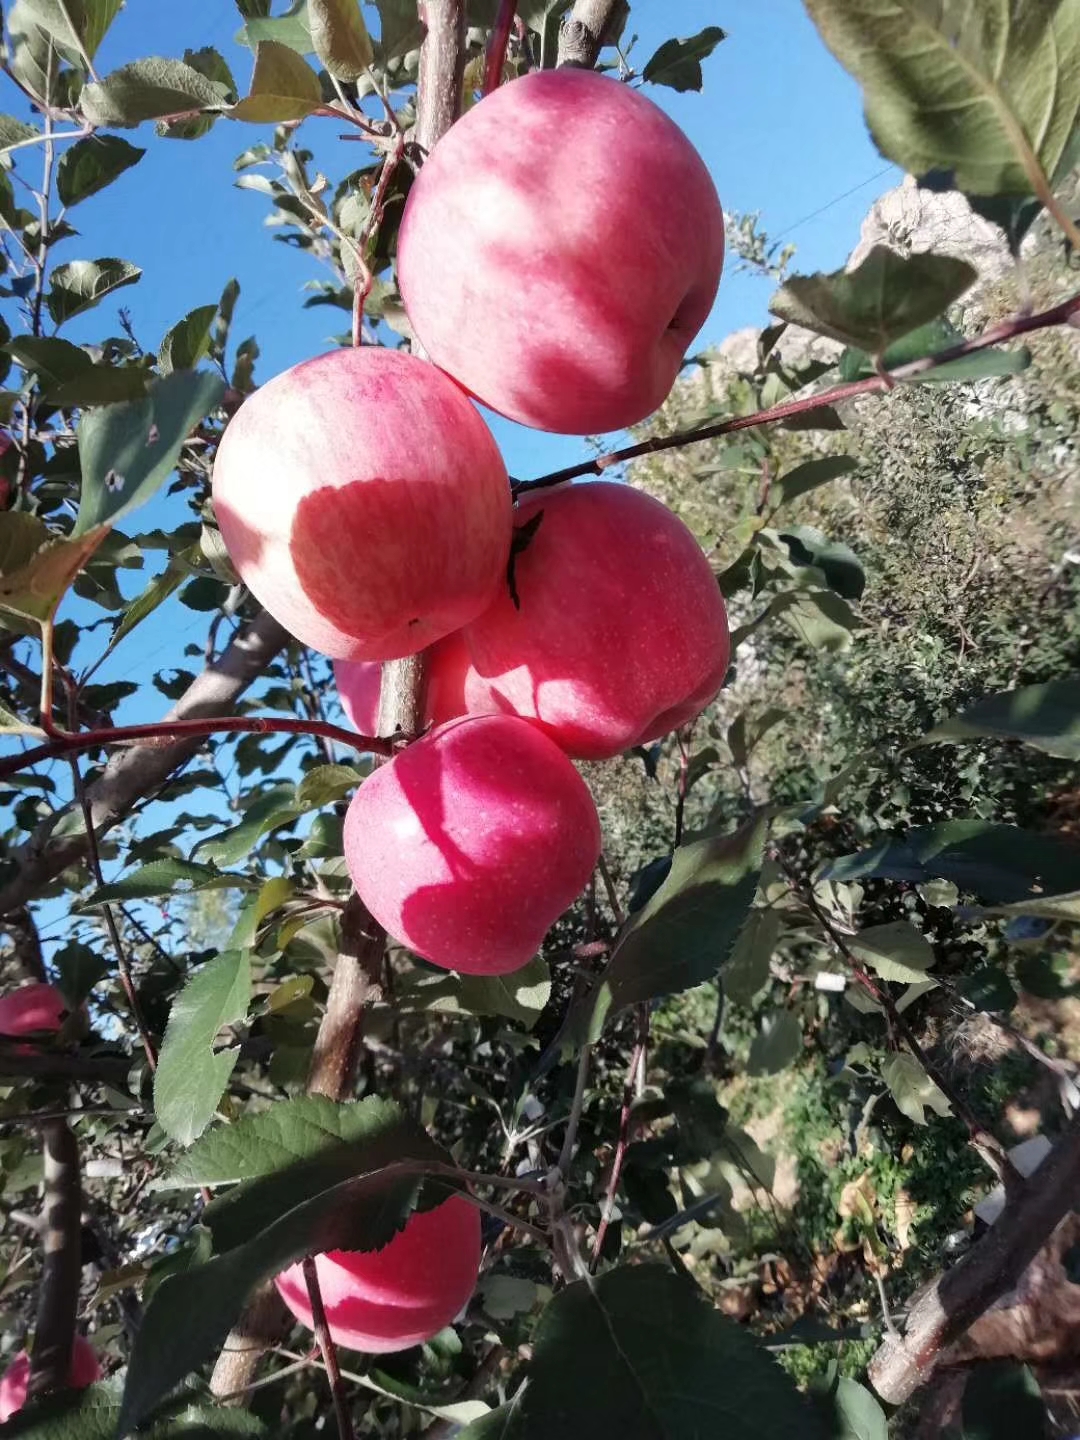 优质蜜浓樱桃苗种植优势